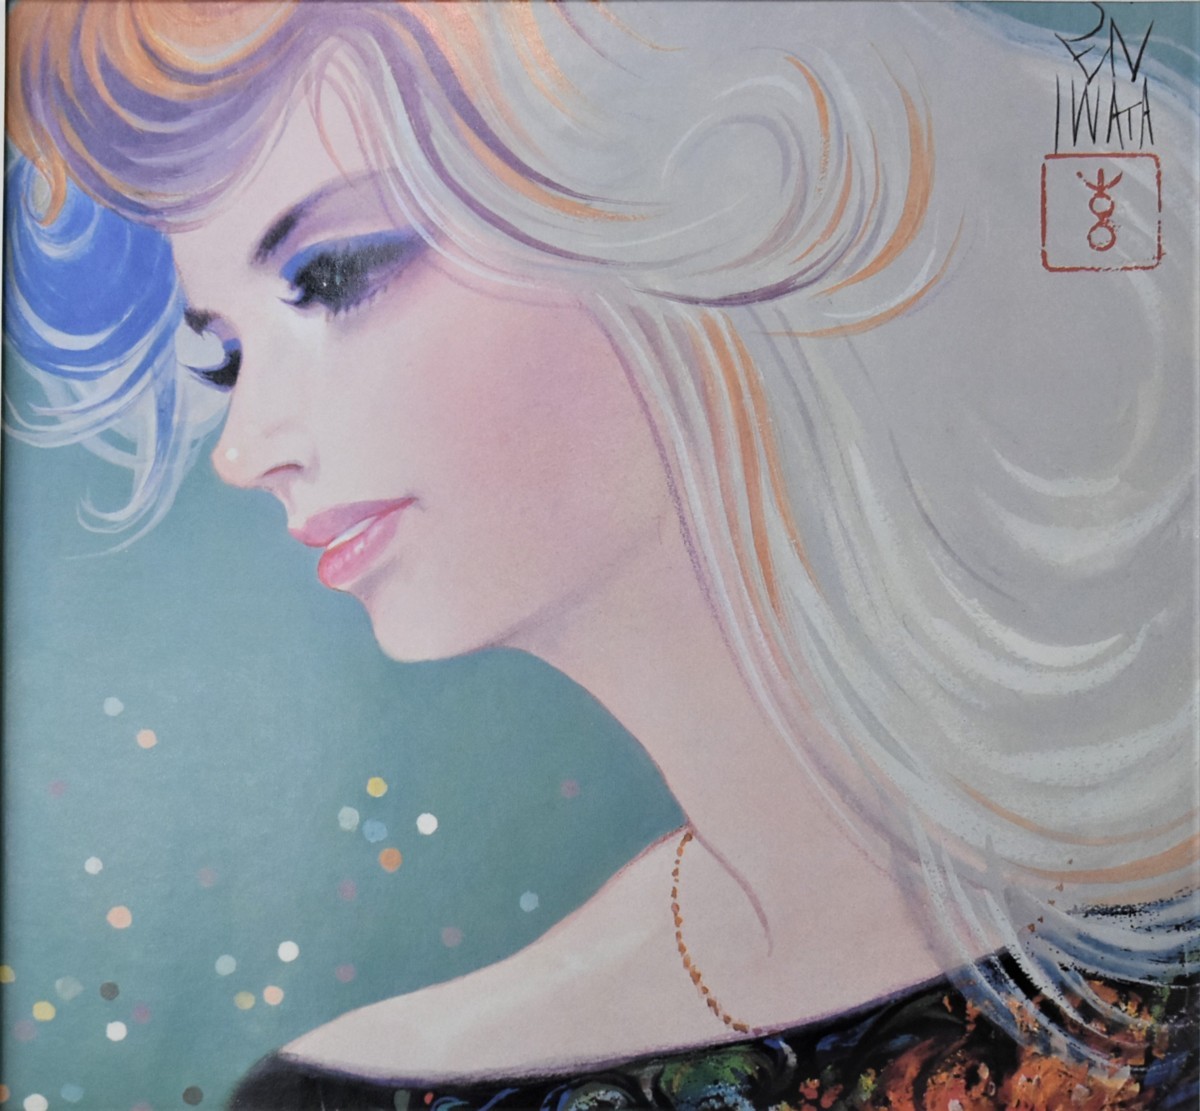 Super trouvaille ! Affiche d'Iwata Sentaro La femme aux trois cents ans : cheveux colorés (moderne) Seiko Gallery, Ouvrages d'art, Peinture, autres